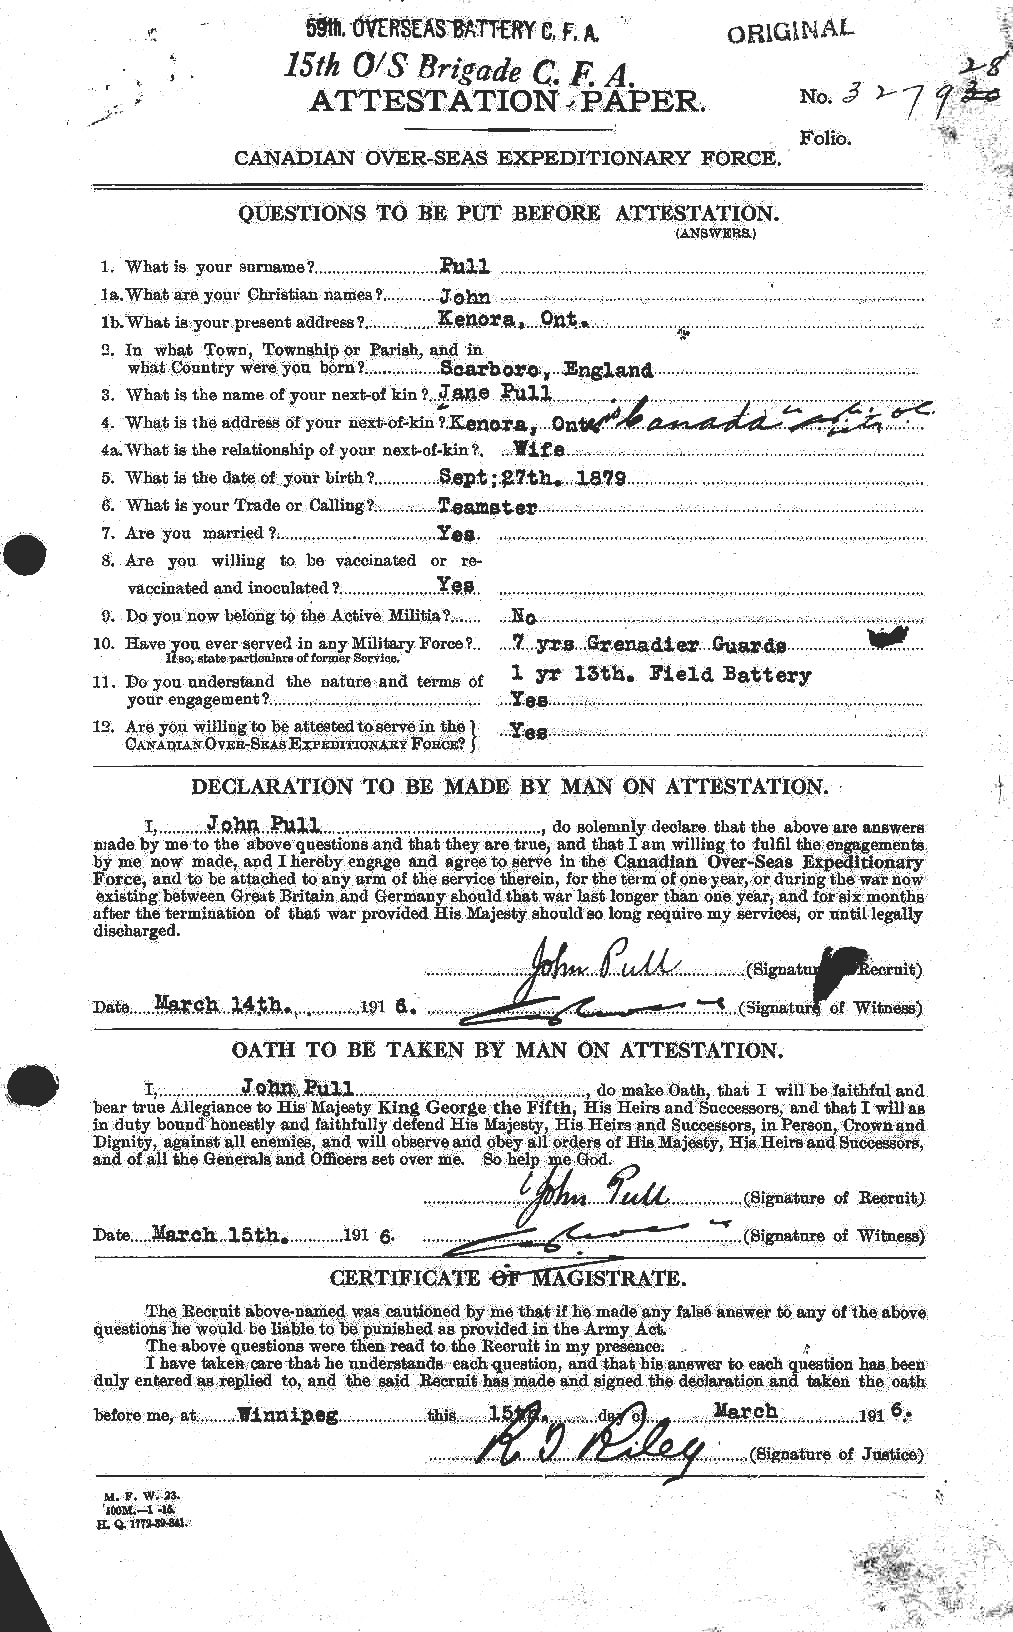 Dossiers du Personnel de la Première Guerre mondiale - CEC 589537a